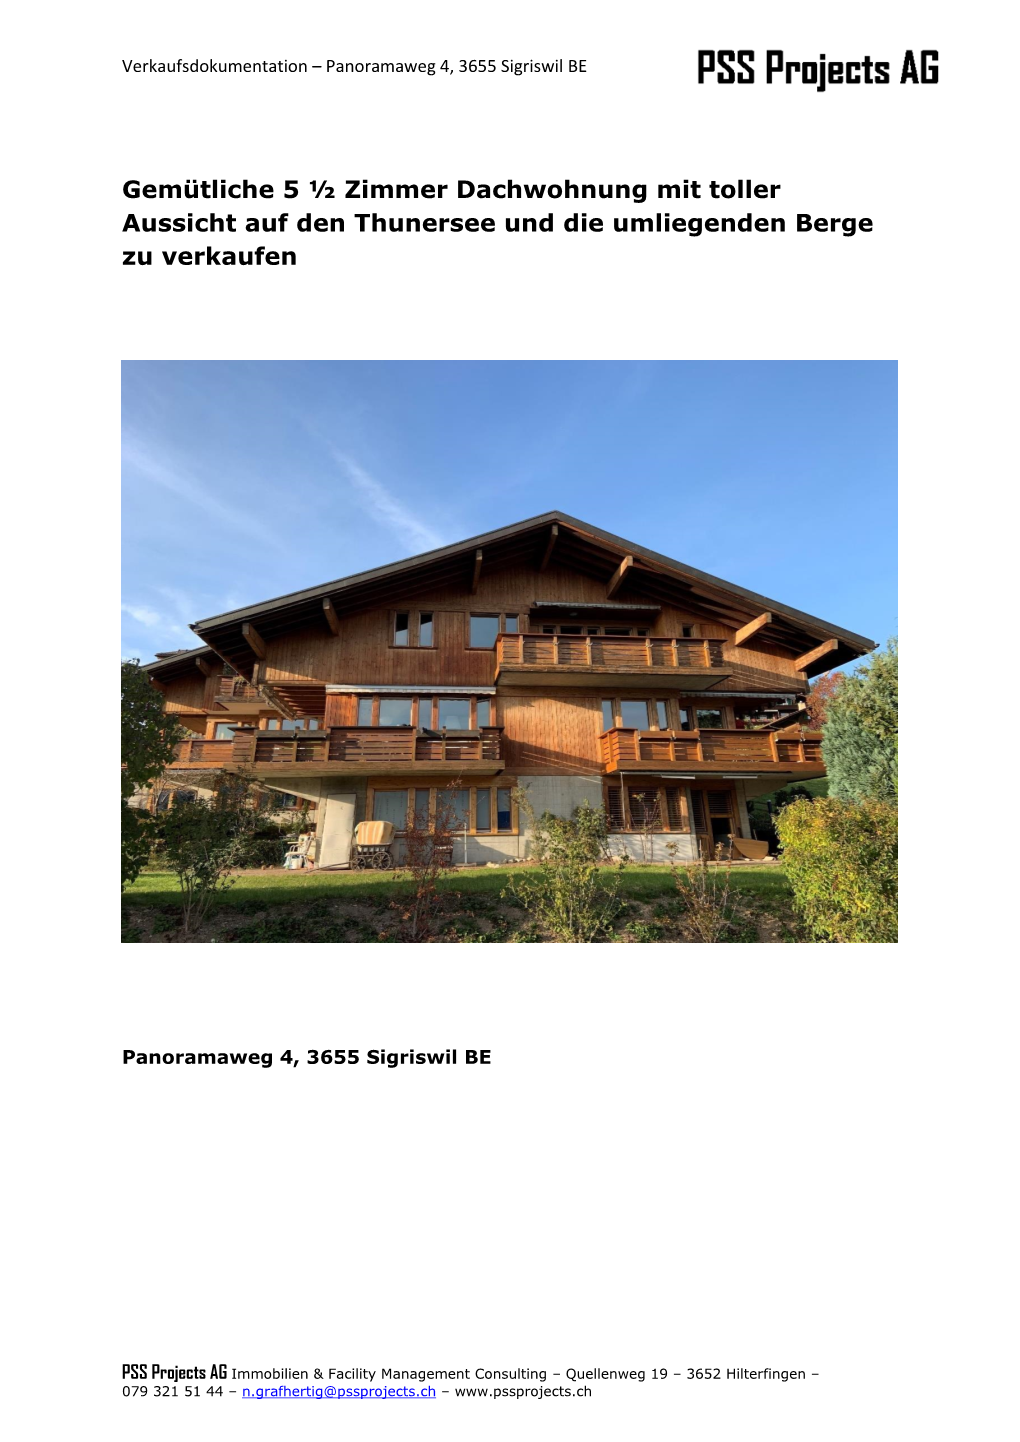 Gemütliche 5 ½ Zimmer Dachwohnung Mit Toller Aussicht Auf Den Thunersee Und Die Umliegenden Berge Zu Verkaufen